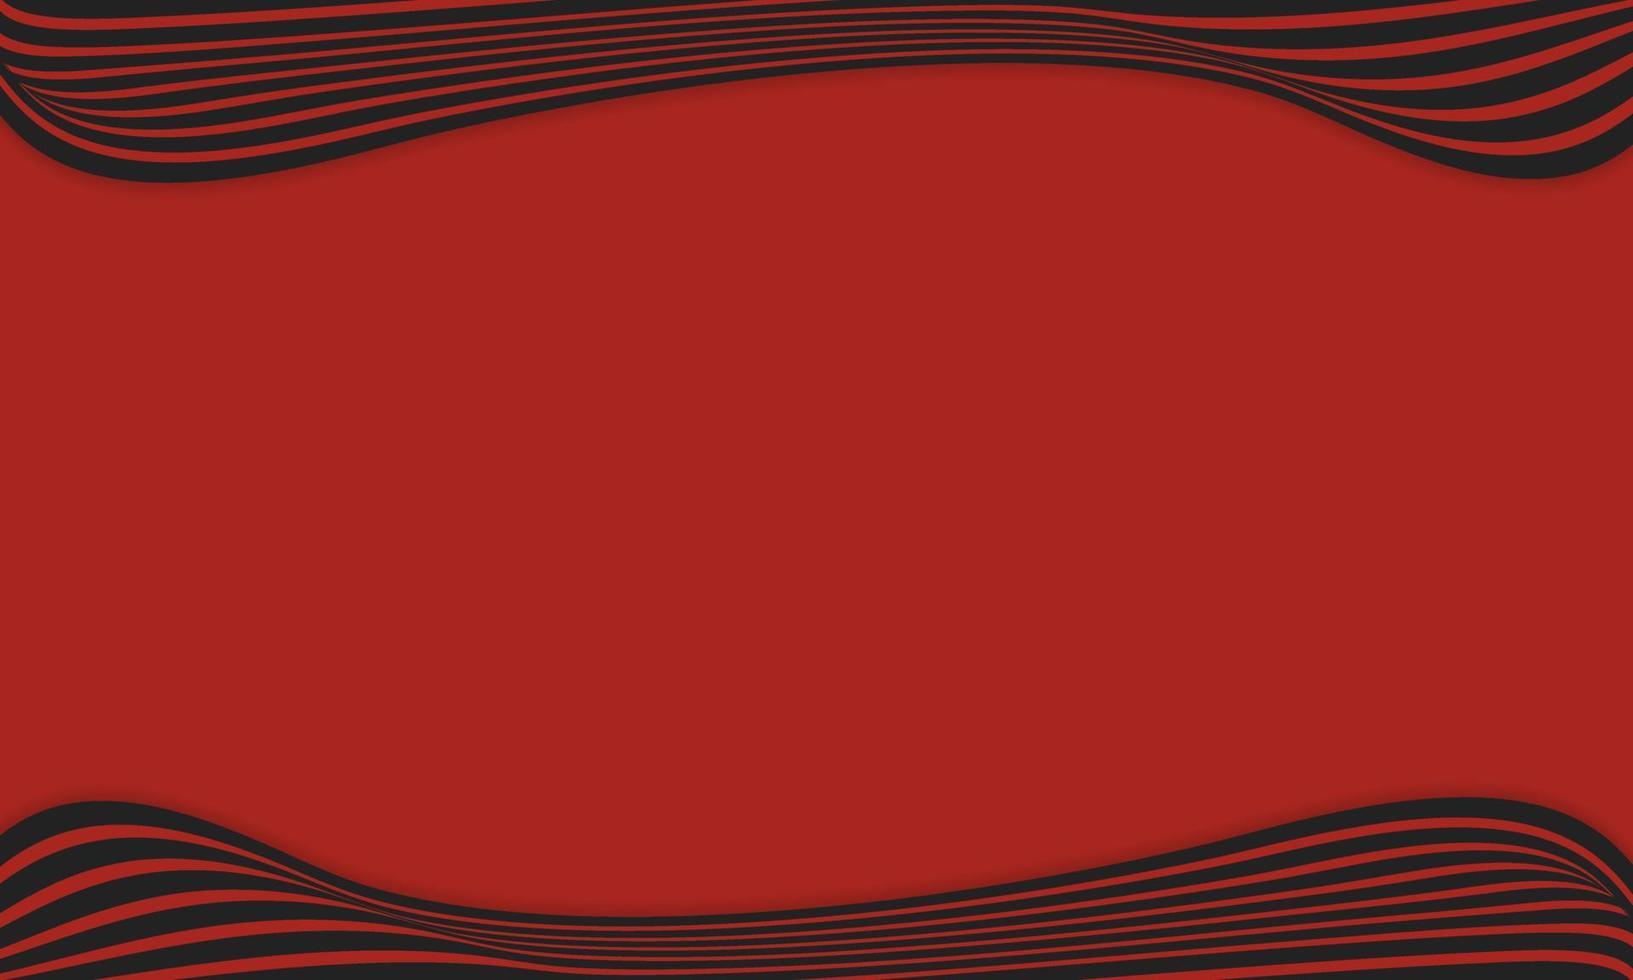 fond abstrait à rayures en rouge et noir avec motif de lignes ondulées. vecteur